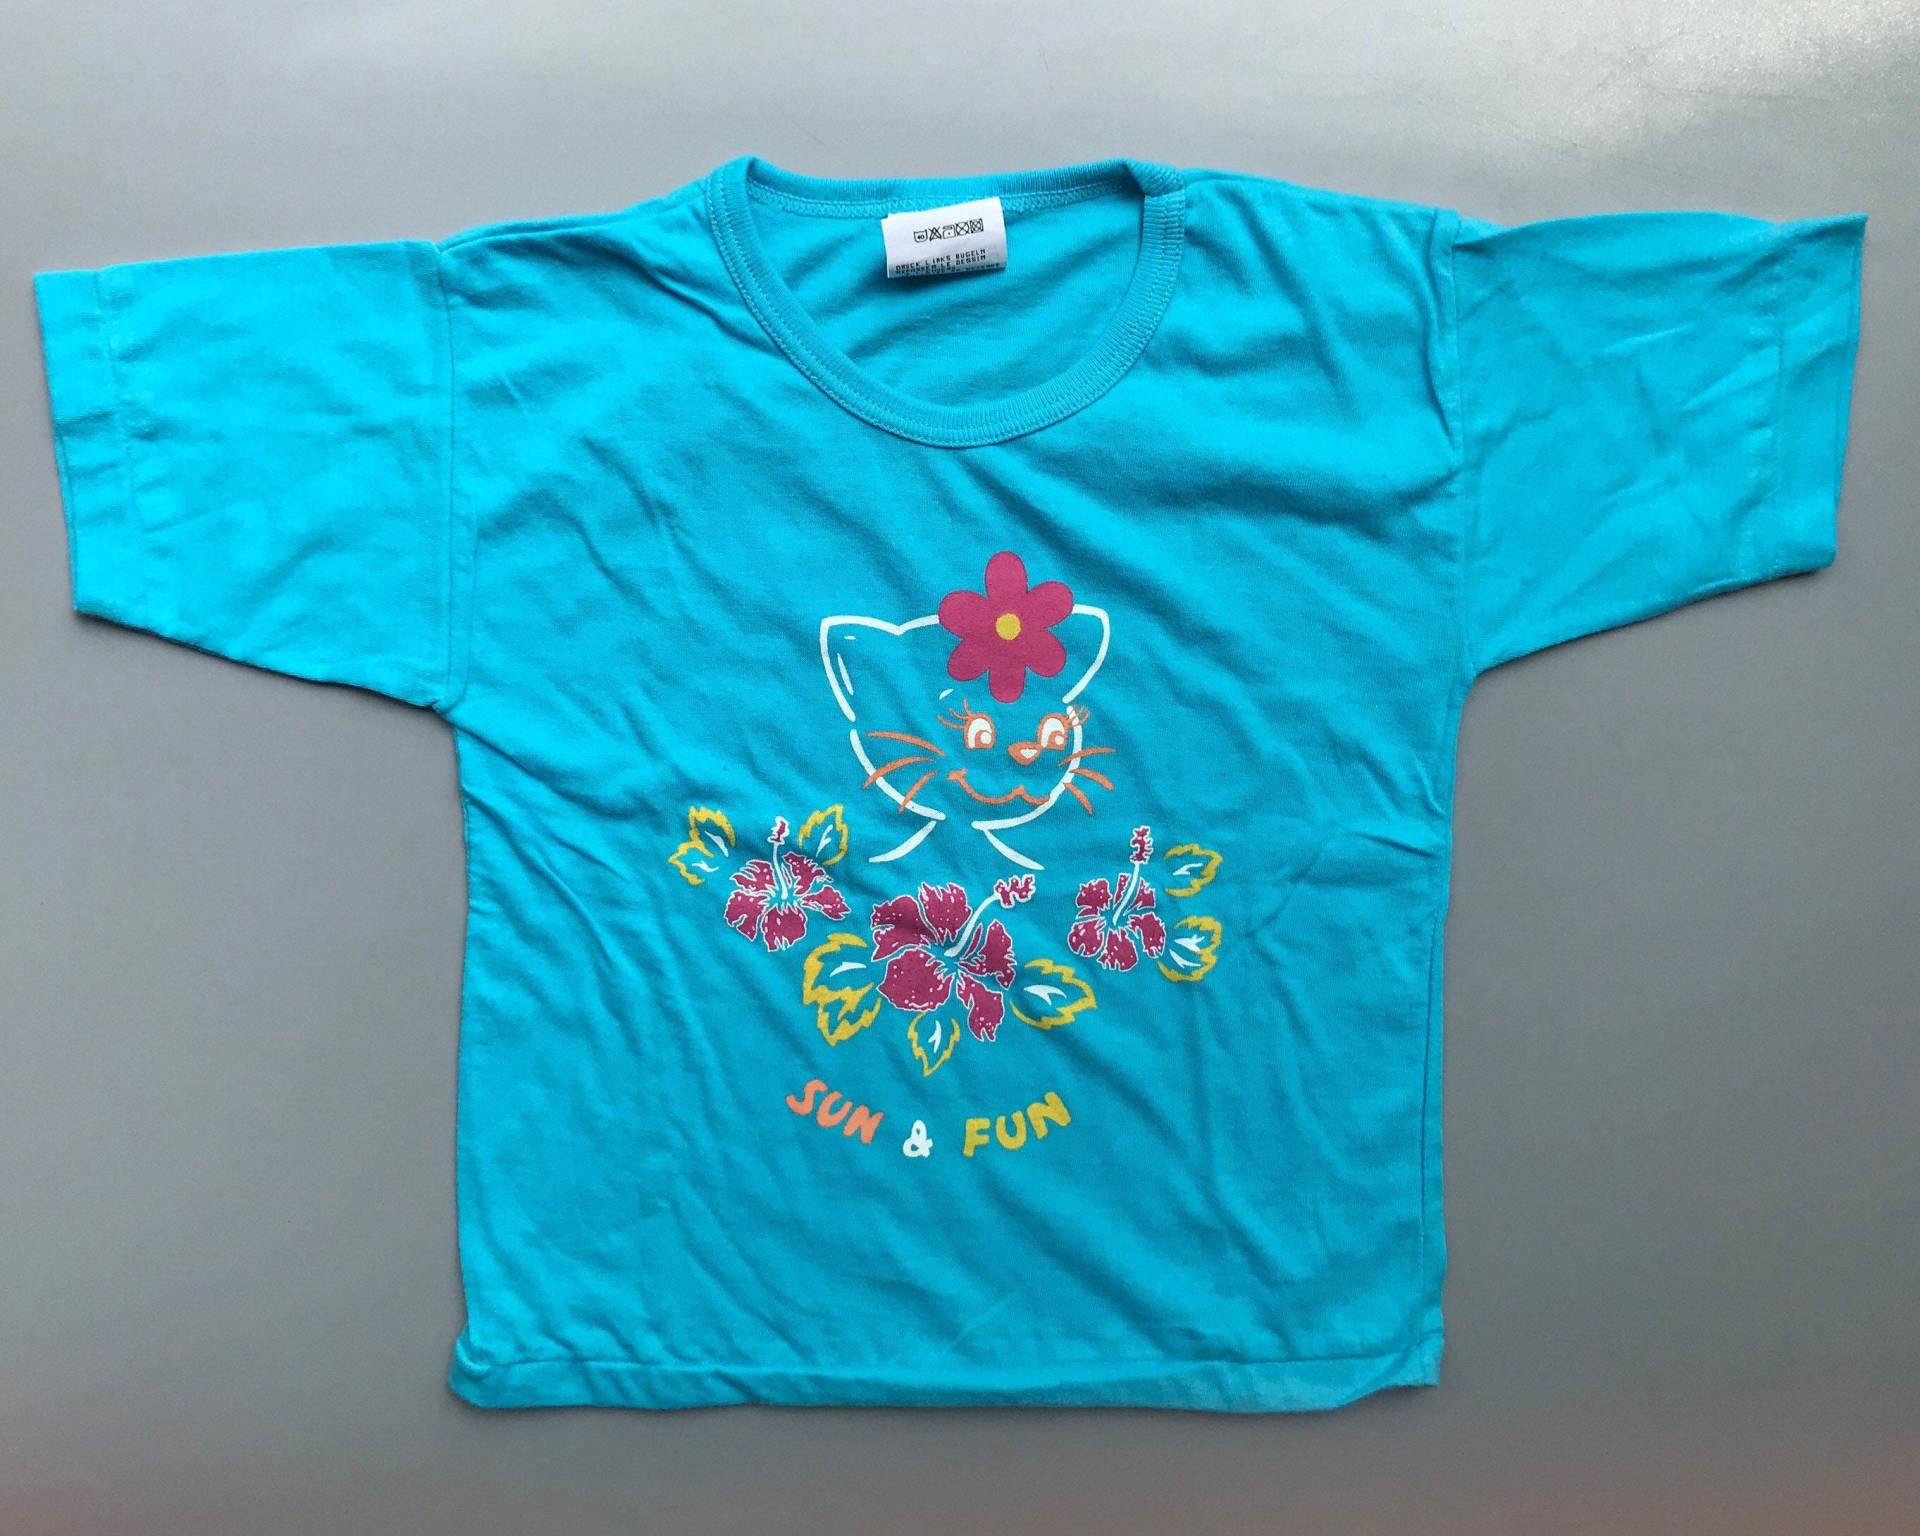 Vintage Blaue Katze Baby Mädchen Top T-Shirt Sommer 12-18 Monate 1990Er Jahre Retro von OrangesandLemonsJnr